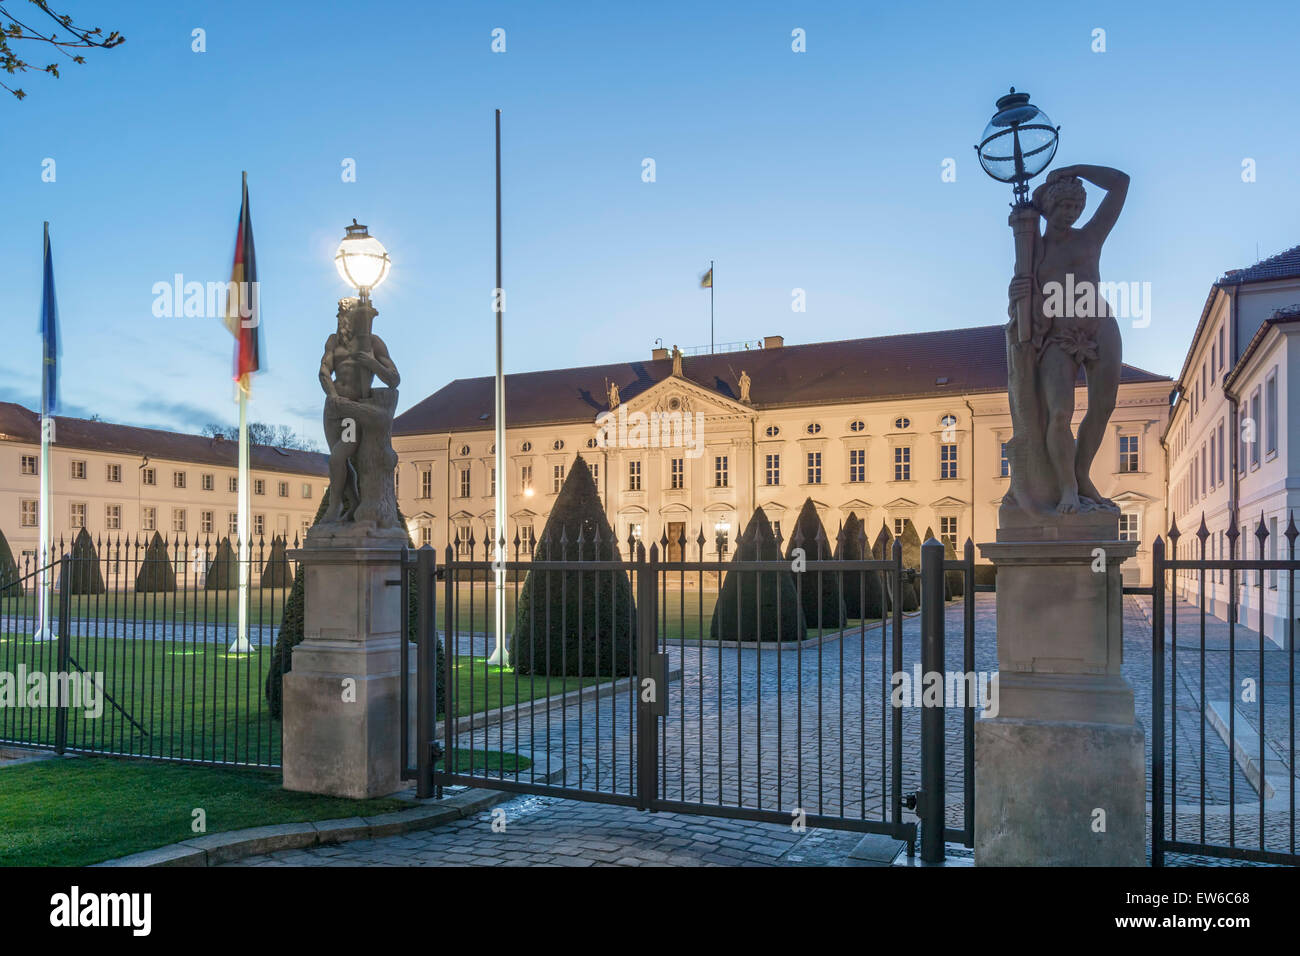 El castillo de Bellevue, Oficina del Presidente Federal, Tiergarten, Berlin, Alemania Foto de stock